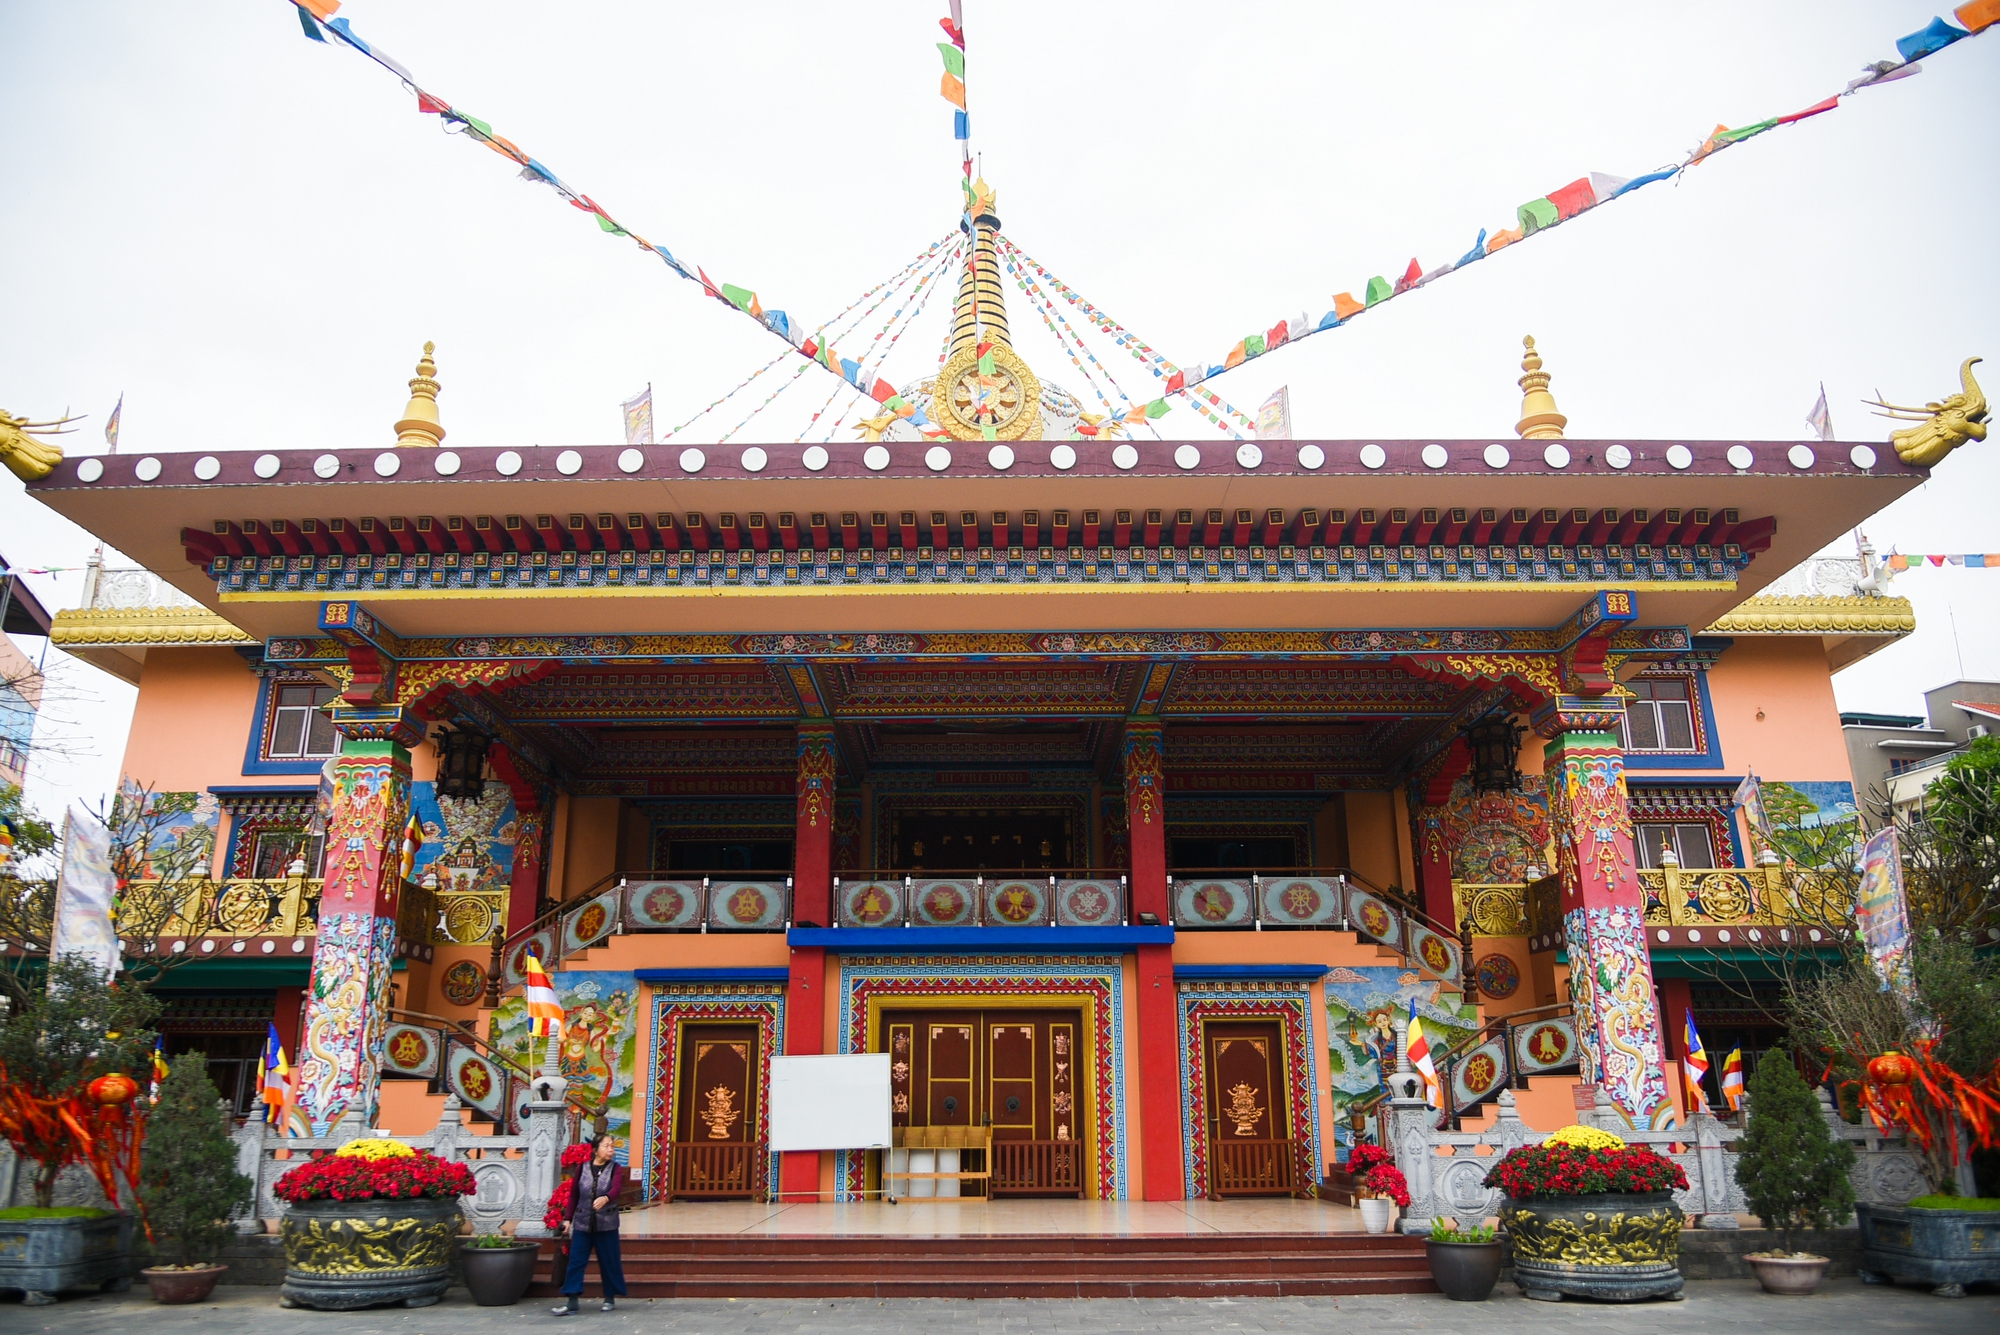 Khám phá ngôi chùa Tây Tạng 600 năm tuổi độc nhất tại Hà Nội - Ảnh 4.